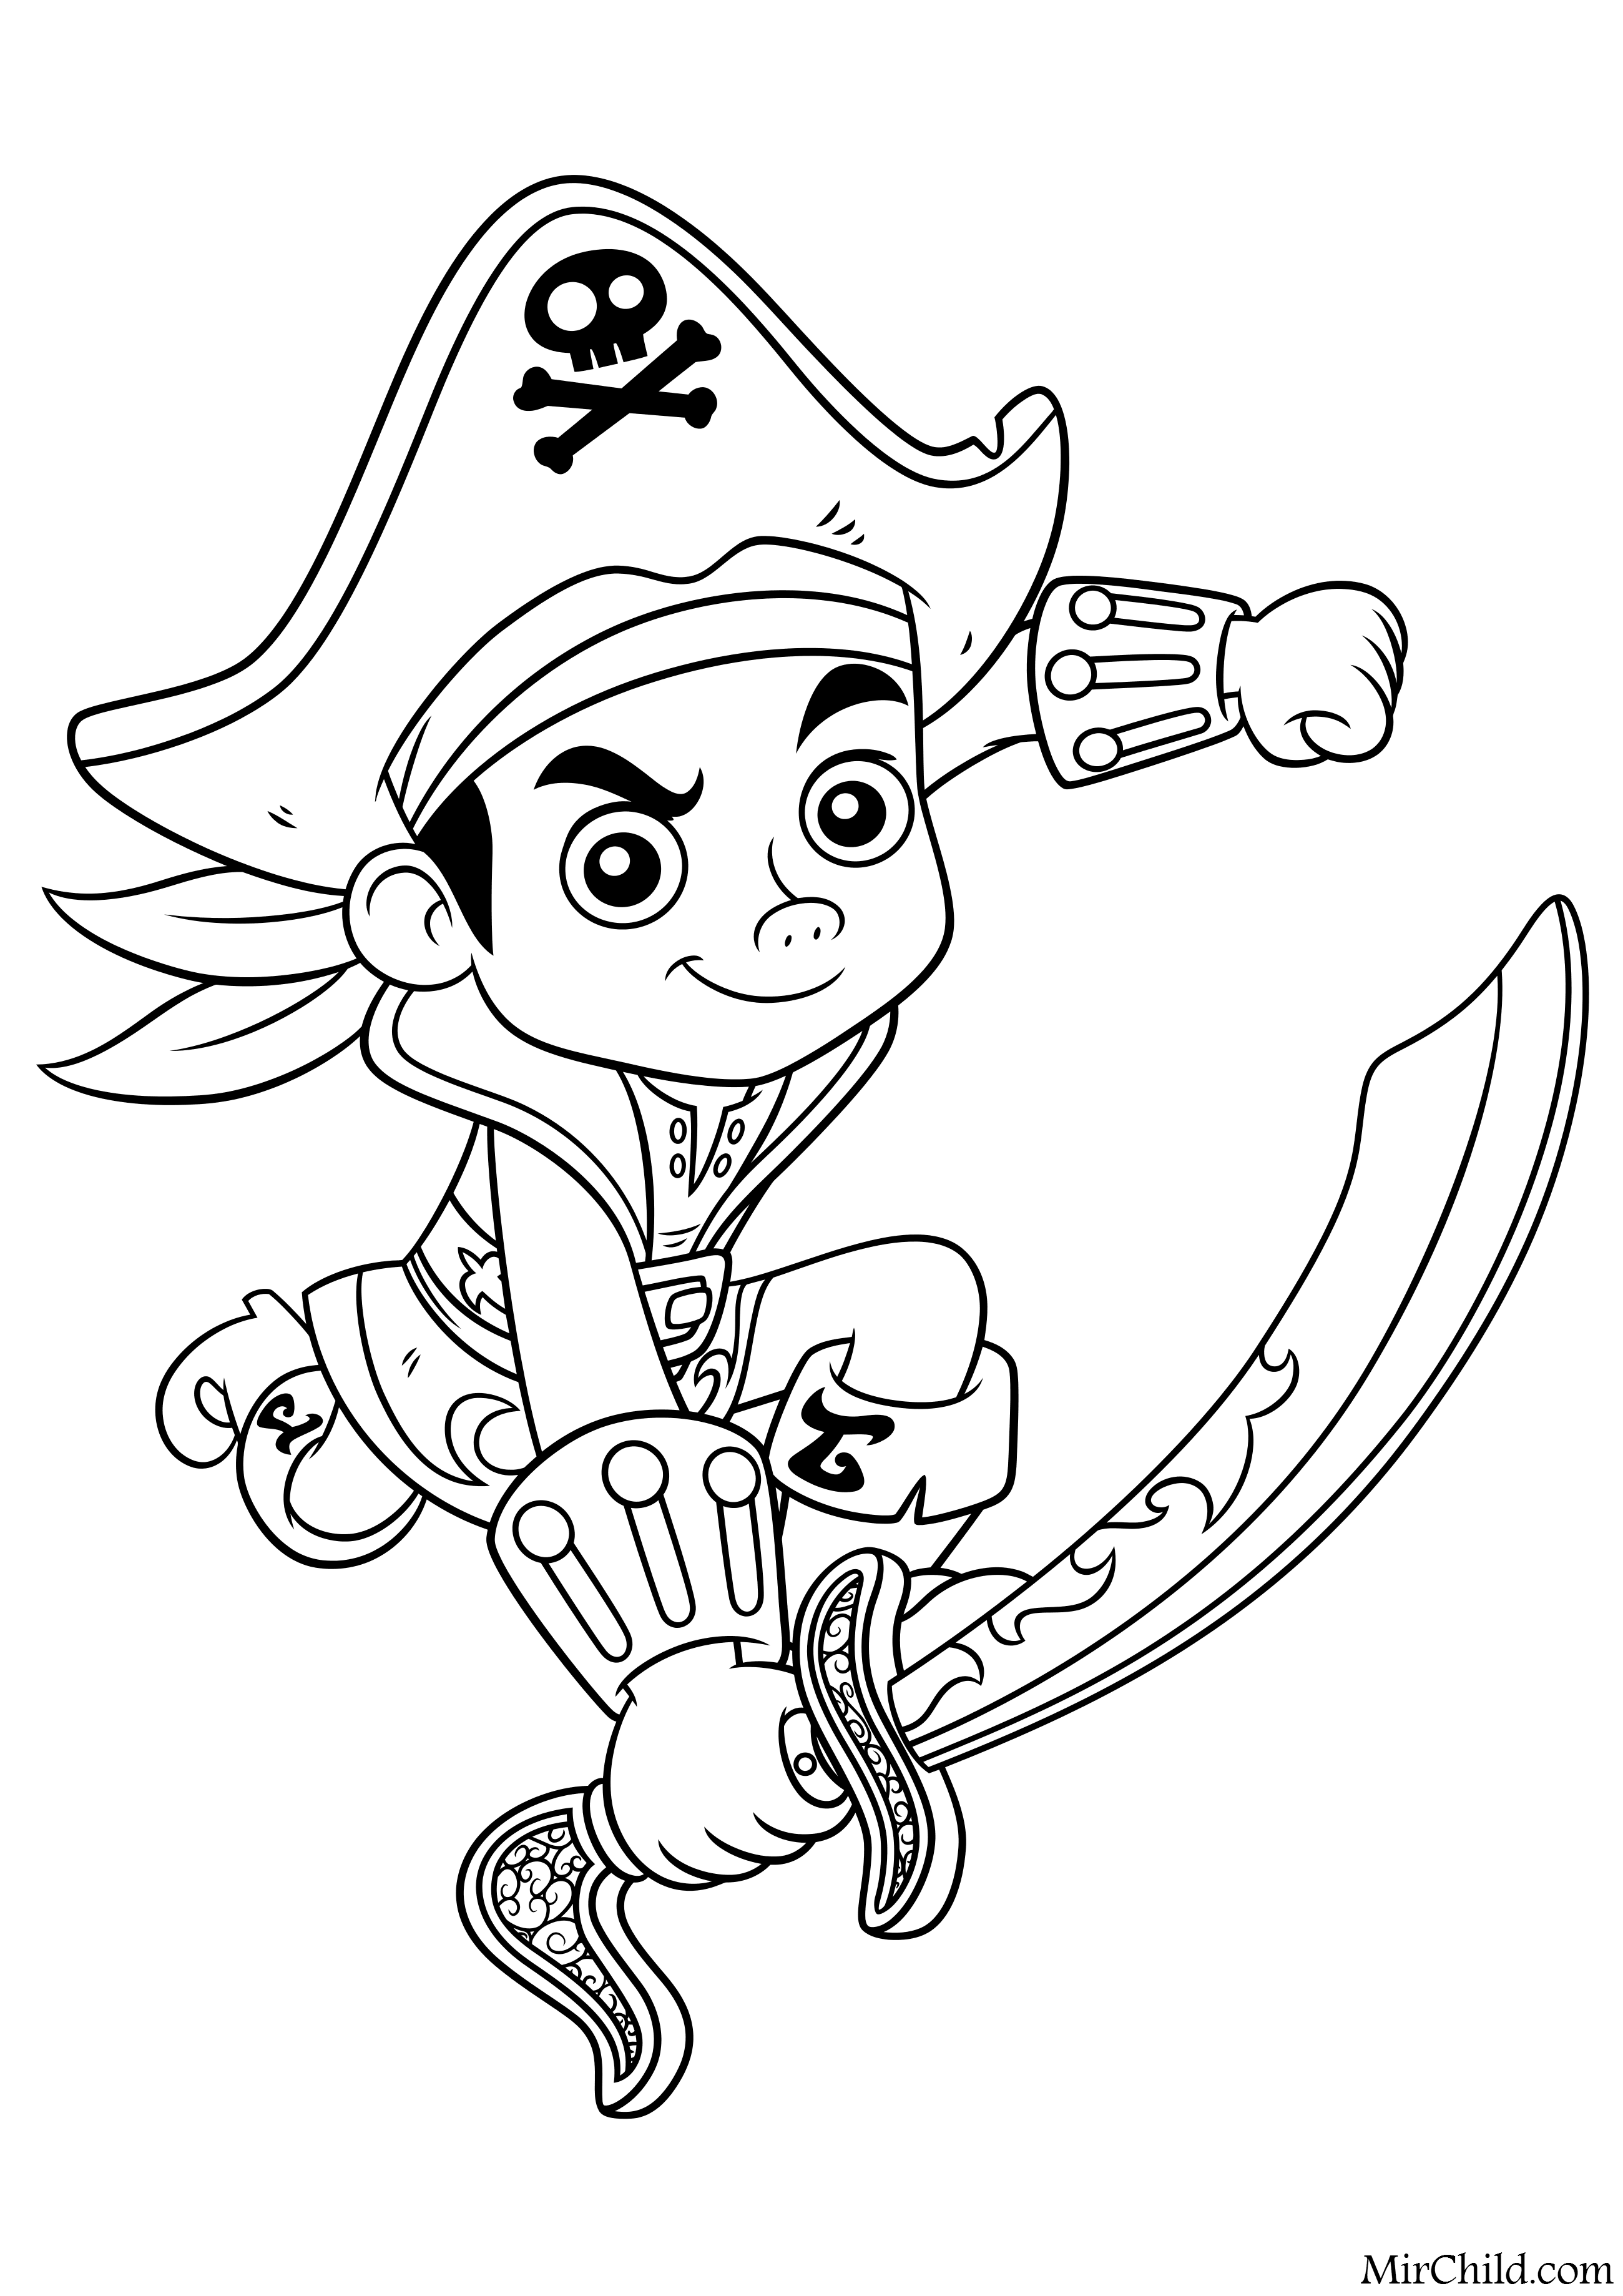 Раскраска - Джейк и пираты Нетландии - Капитан Джейк идёт в атаку.